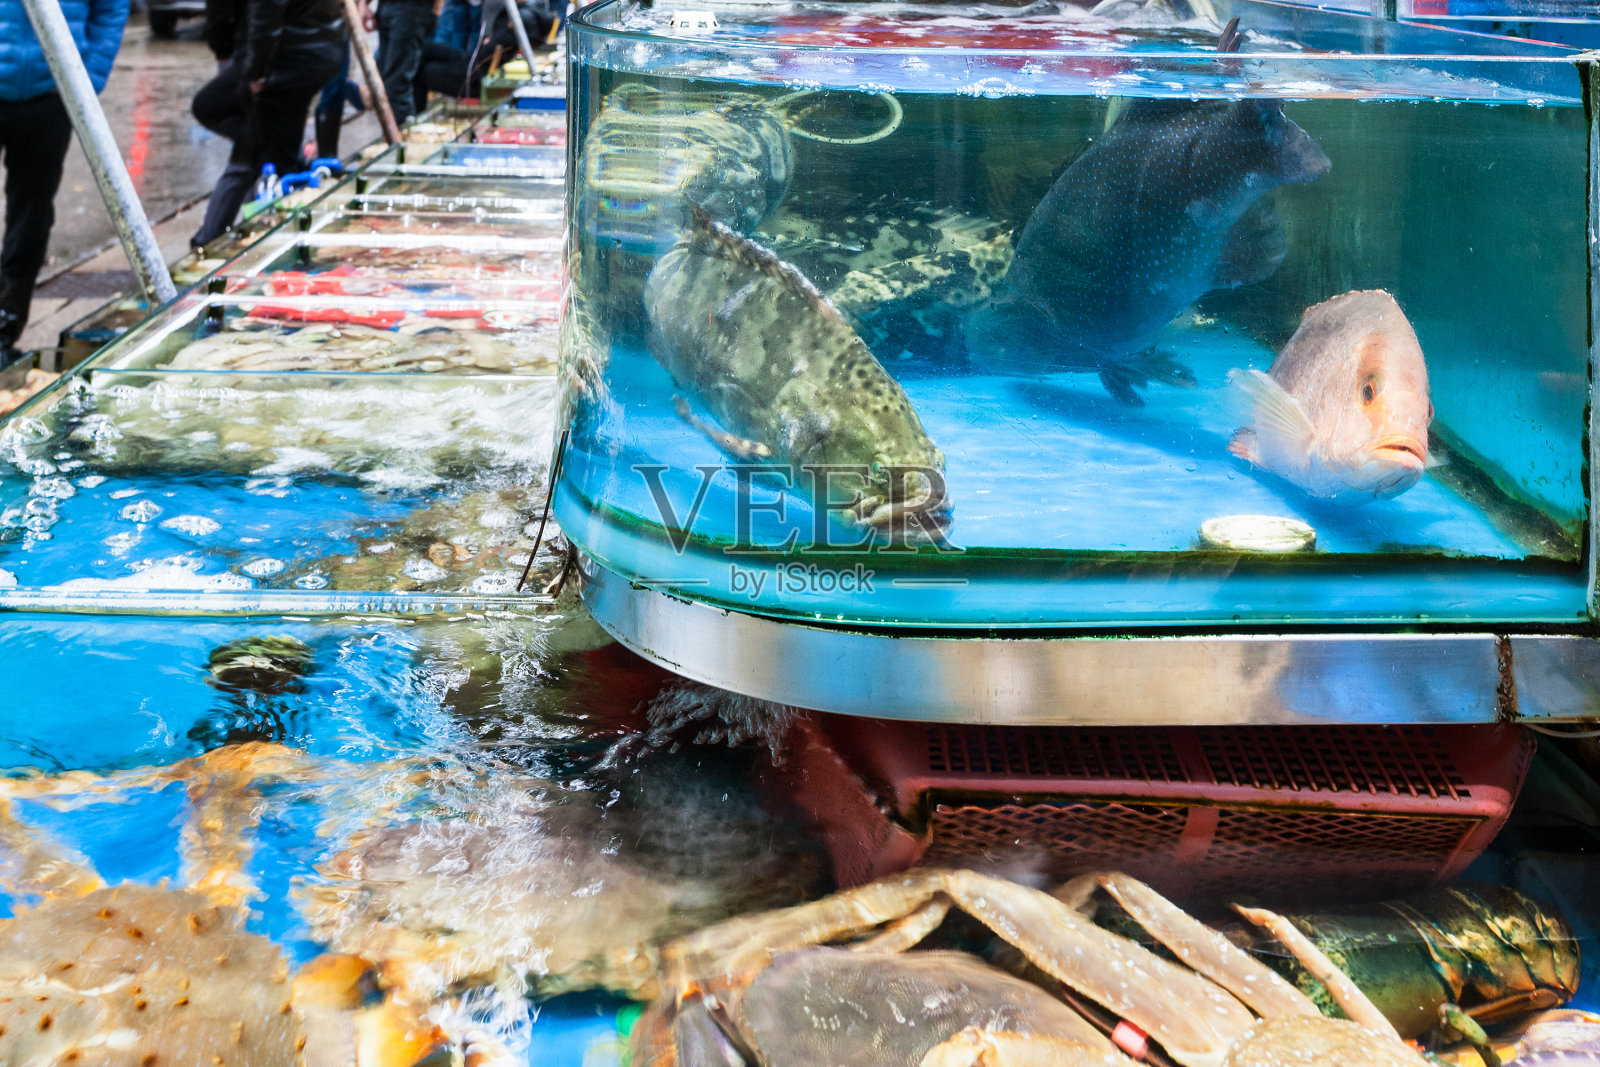 广州鱼市的螃蟹和鱼照片摄影图片